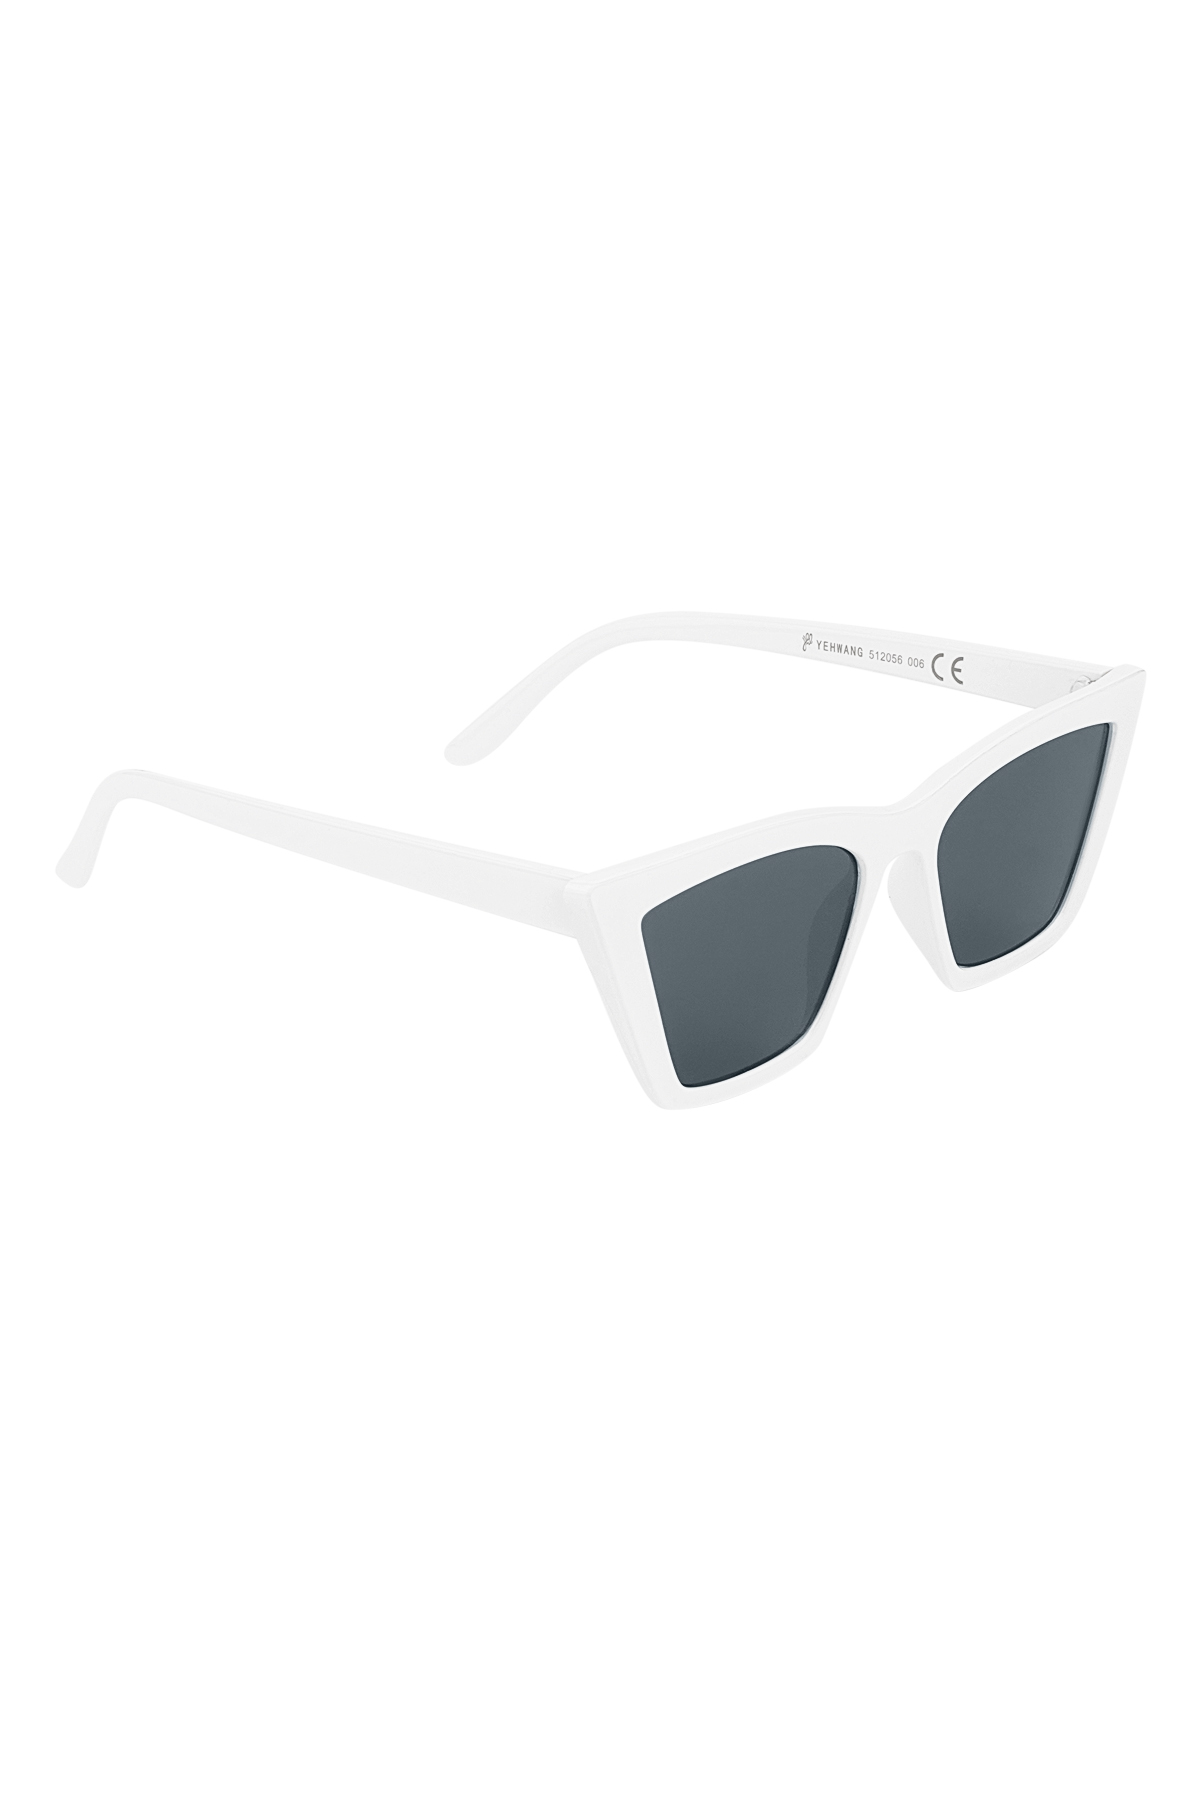 Gafas de sol ojo de gato monocromáticas - blanco y negro